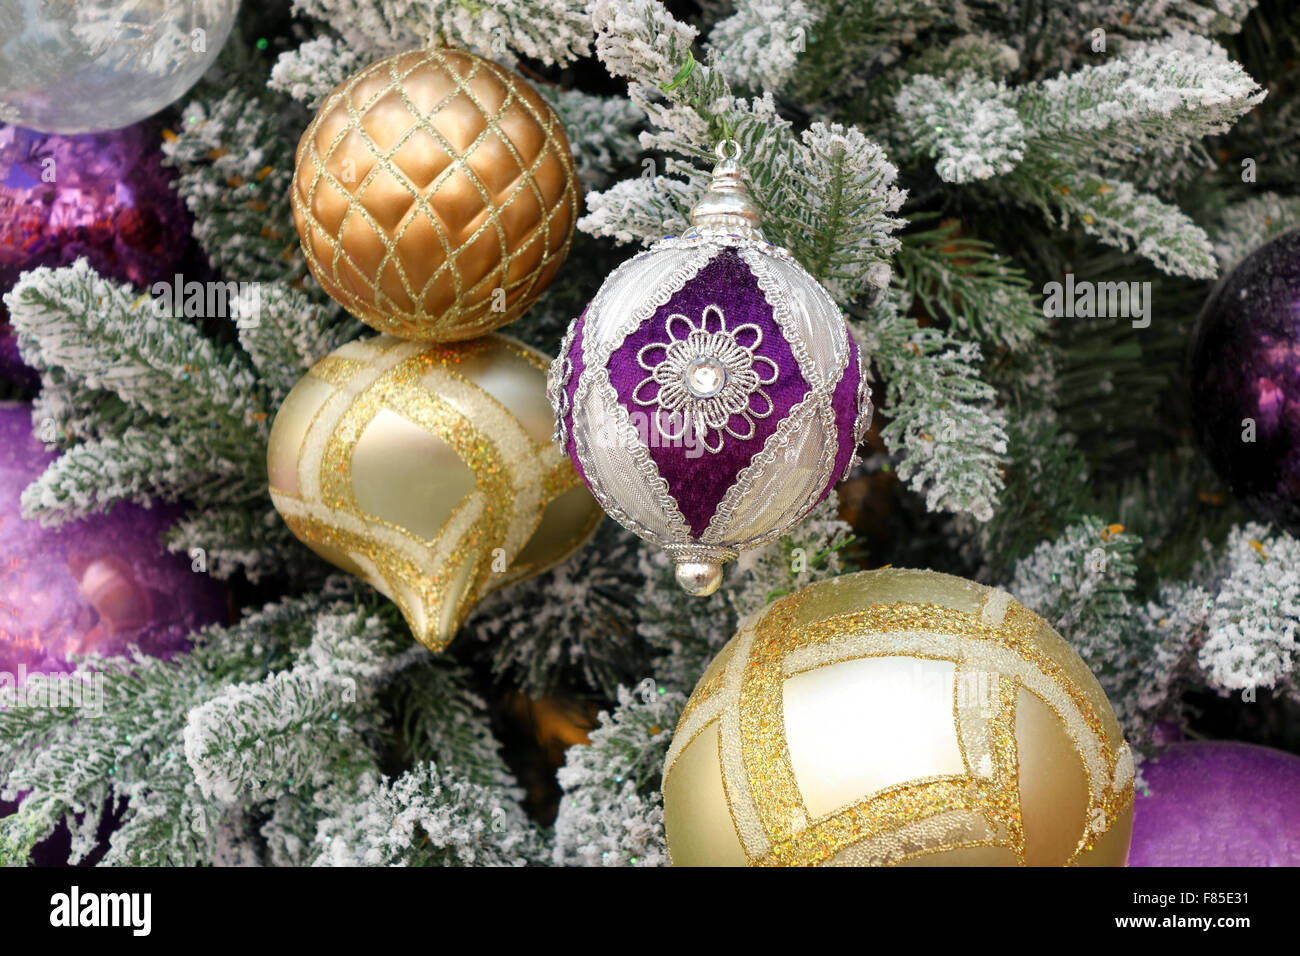 Close up de couleur violette ornement, au centre, à l'arbre de Noël avec plusieurs autres ornements couvertes de neige. Banque D'Images